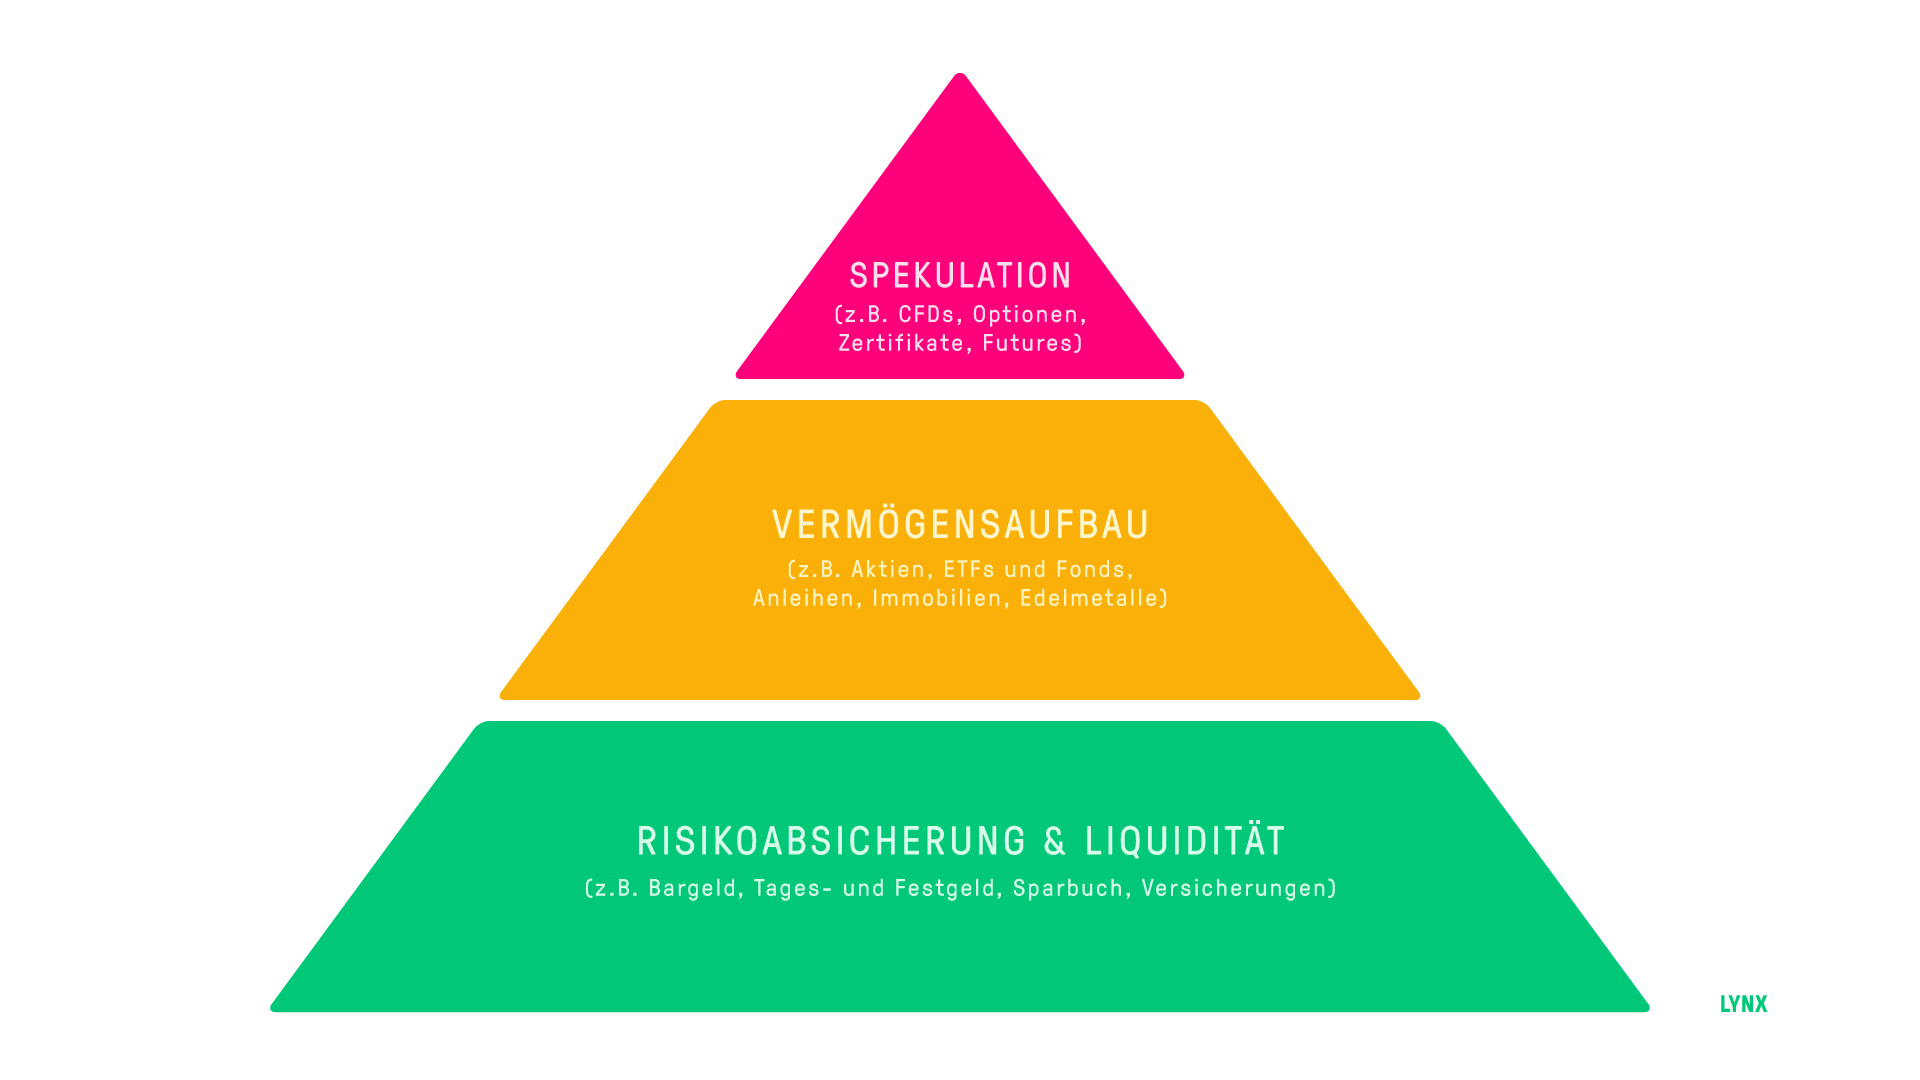 Vermögenspyramide Deutschland | Online Broker LYNX